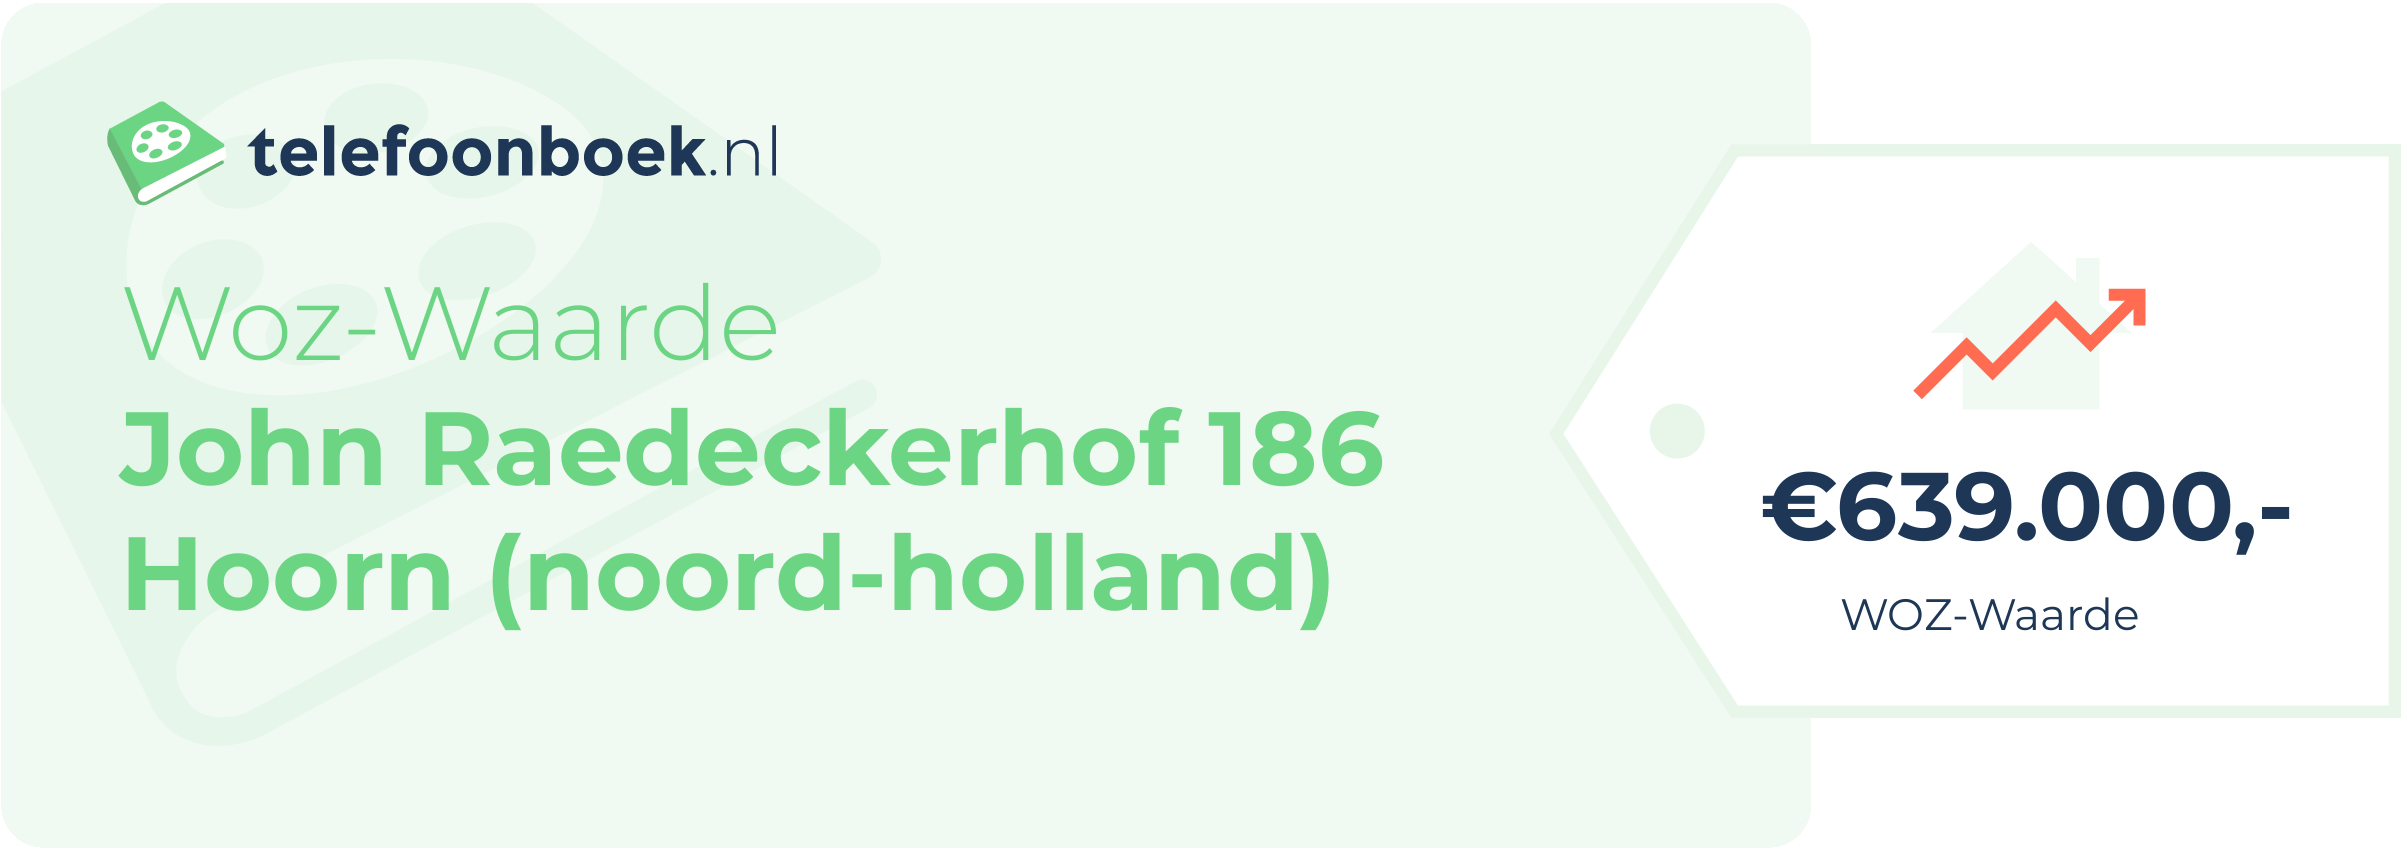 WOZ-waarde John Raedeckerhof 186 Hoorn (Noord-Holland)